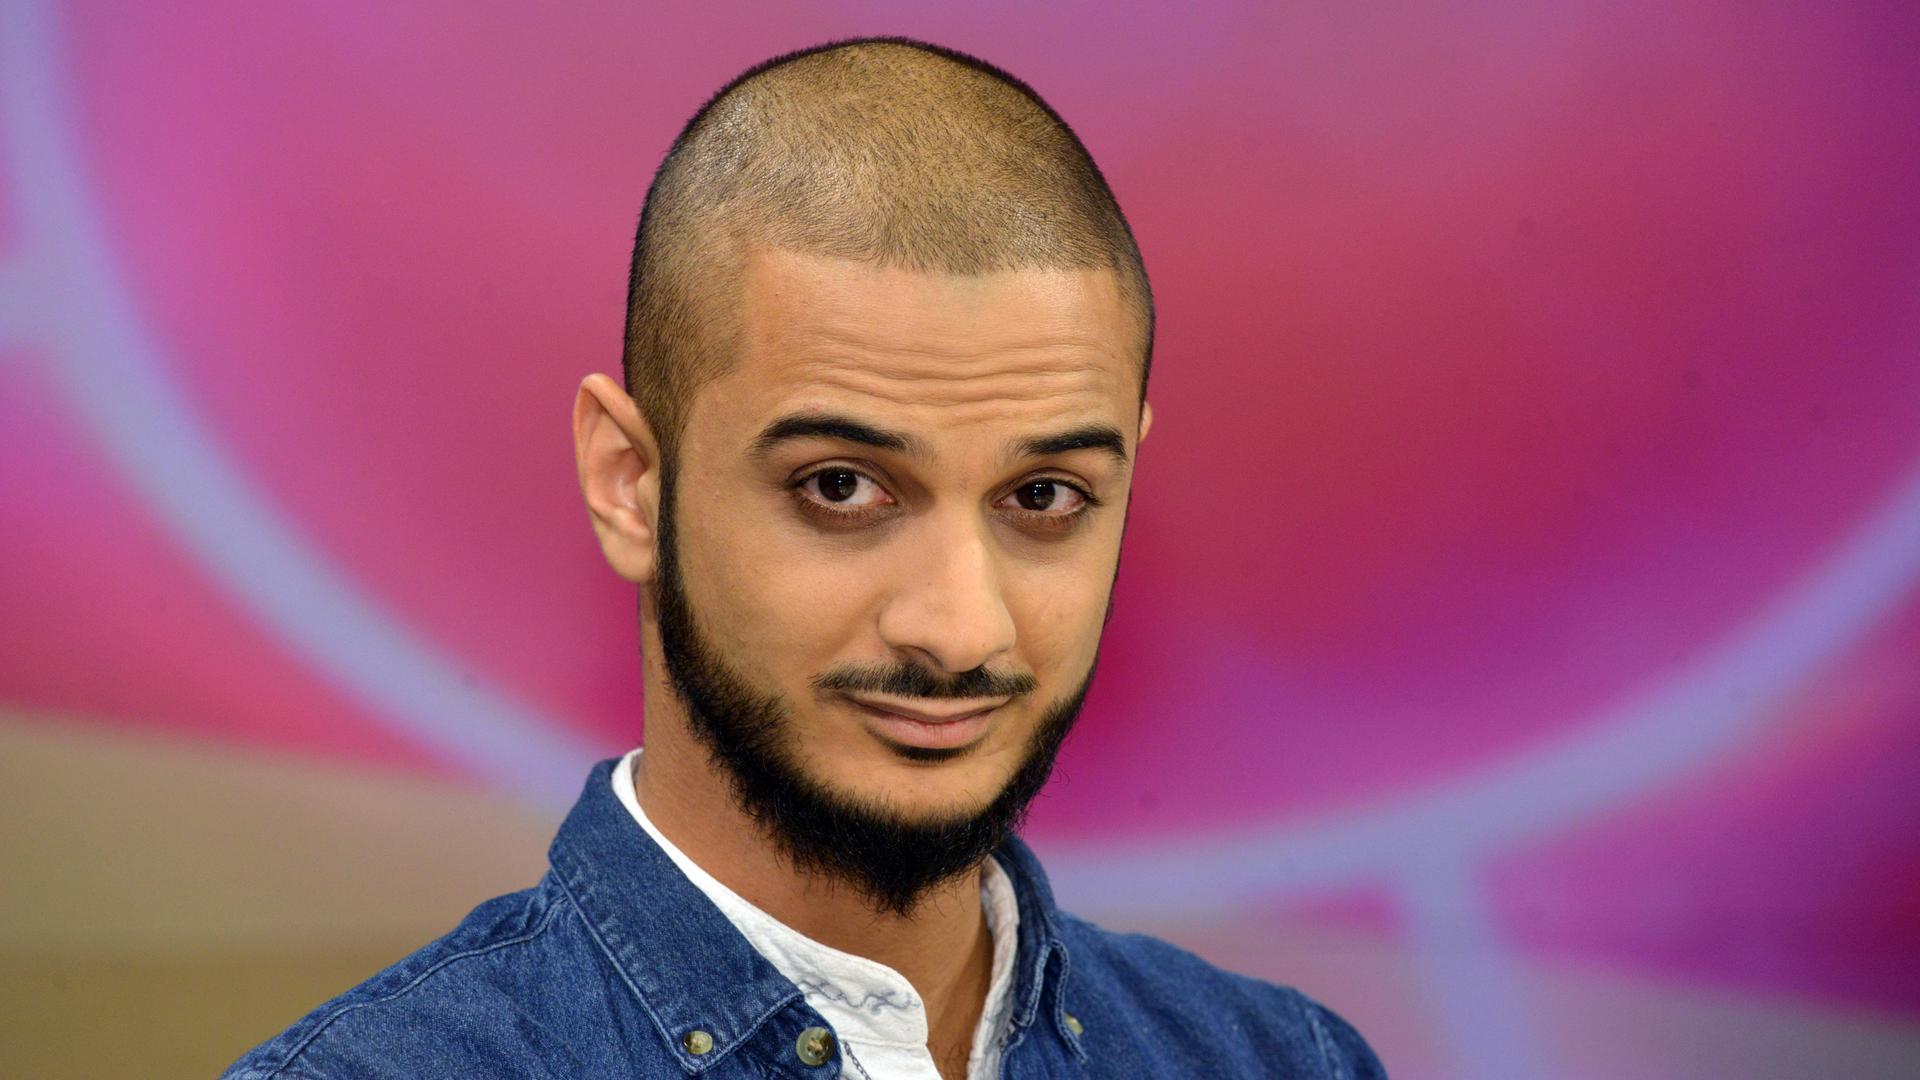 Der Islamwissenschaftler und Satiriker Younes Al-Amayra, aufgenommen im Jahr 2015